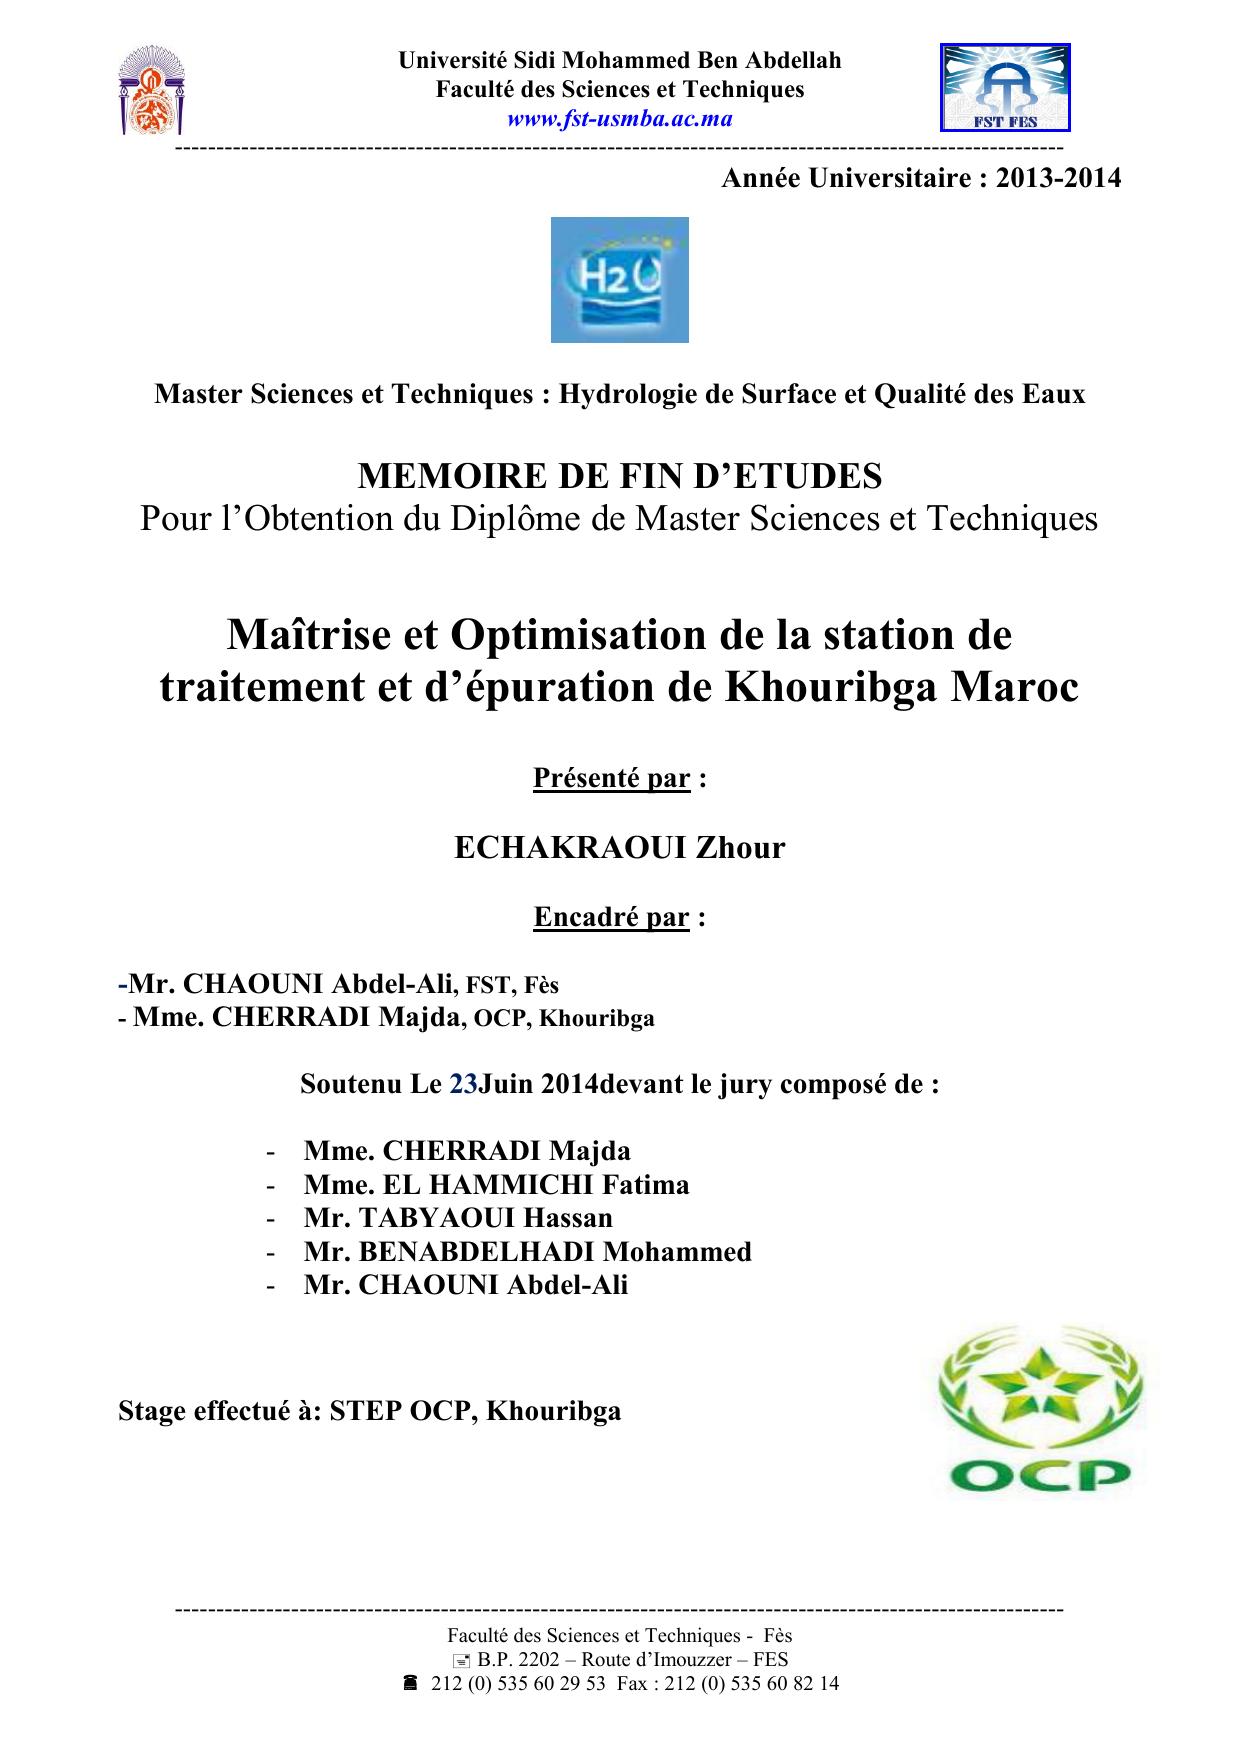 Maîtrise et Optimisation de la station de traitement et d’épuration de Khouribga Maroc